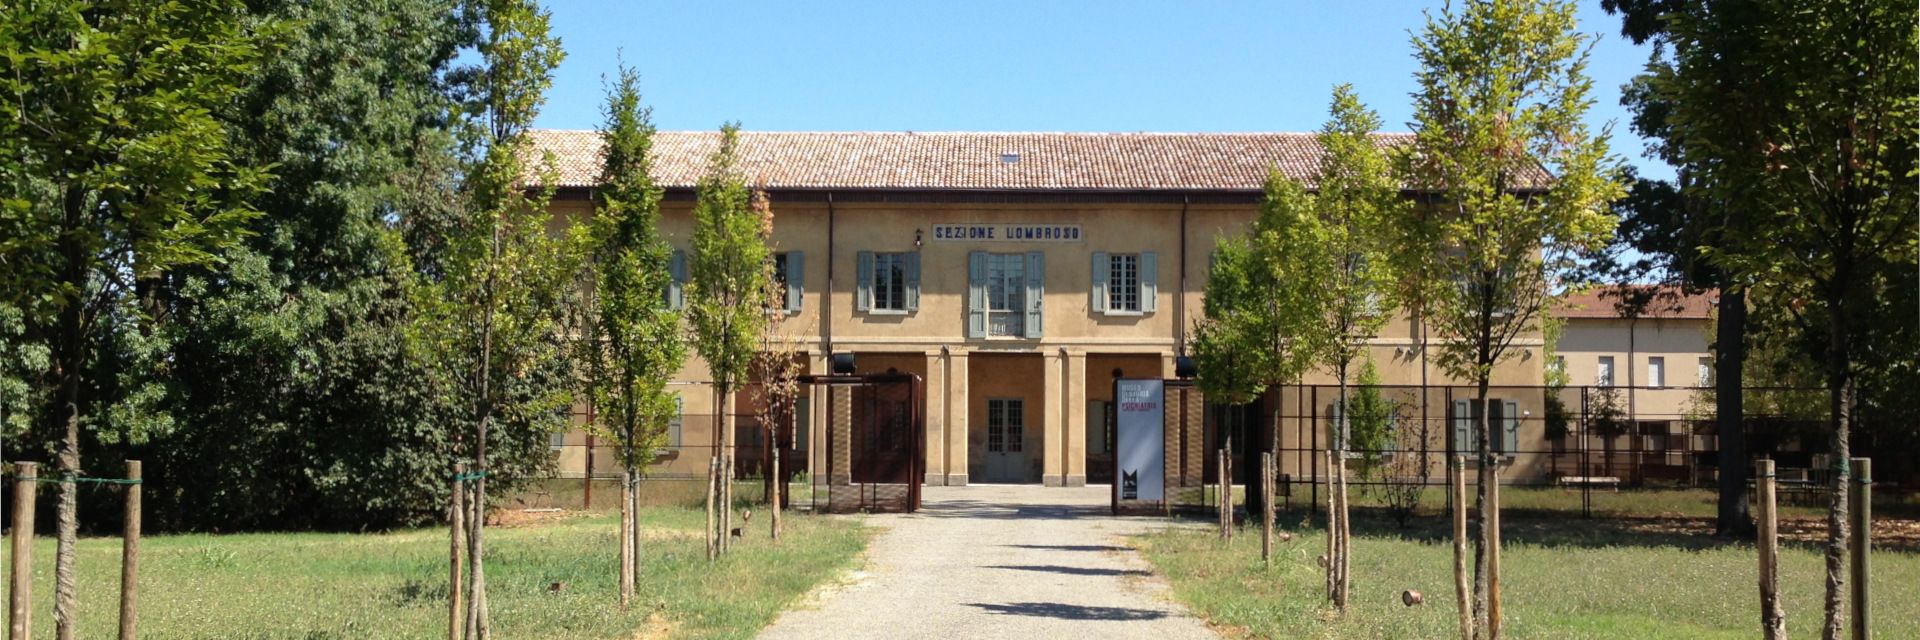 Museo de Historia de la Psiquiatría de Reggio Emilia